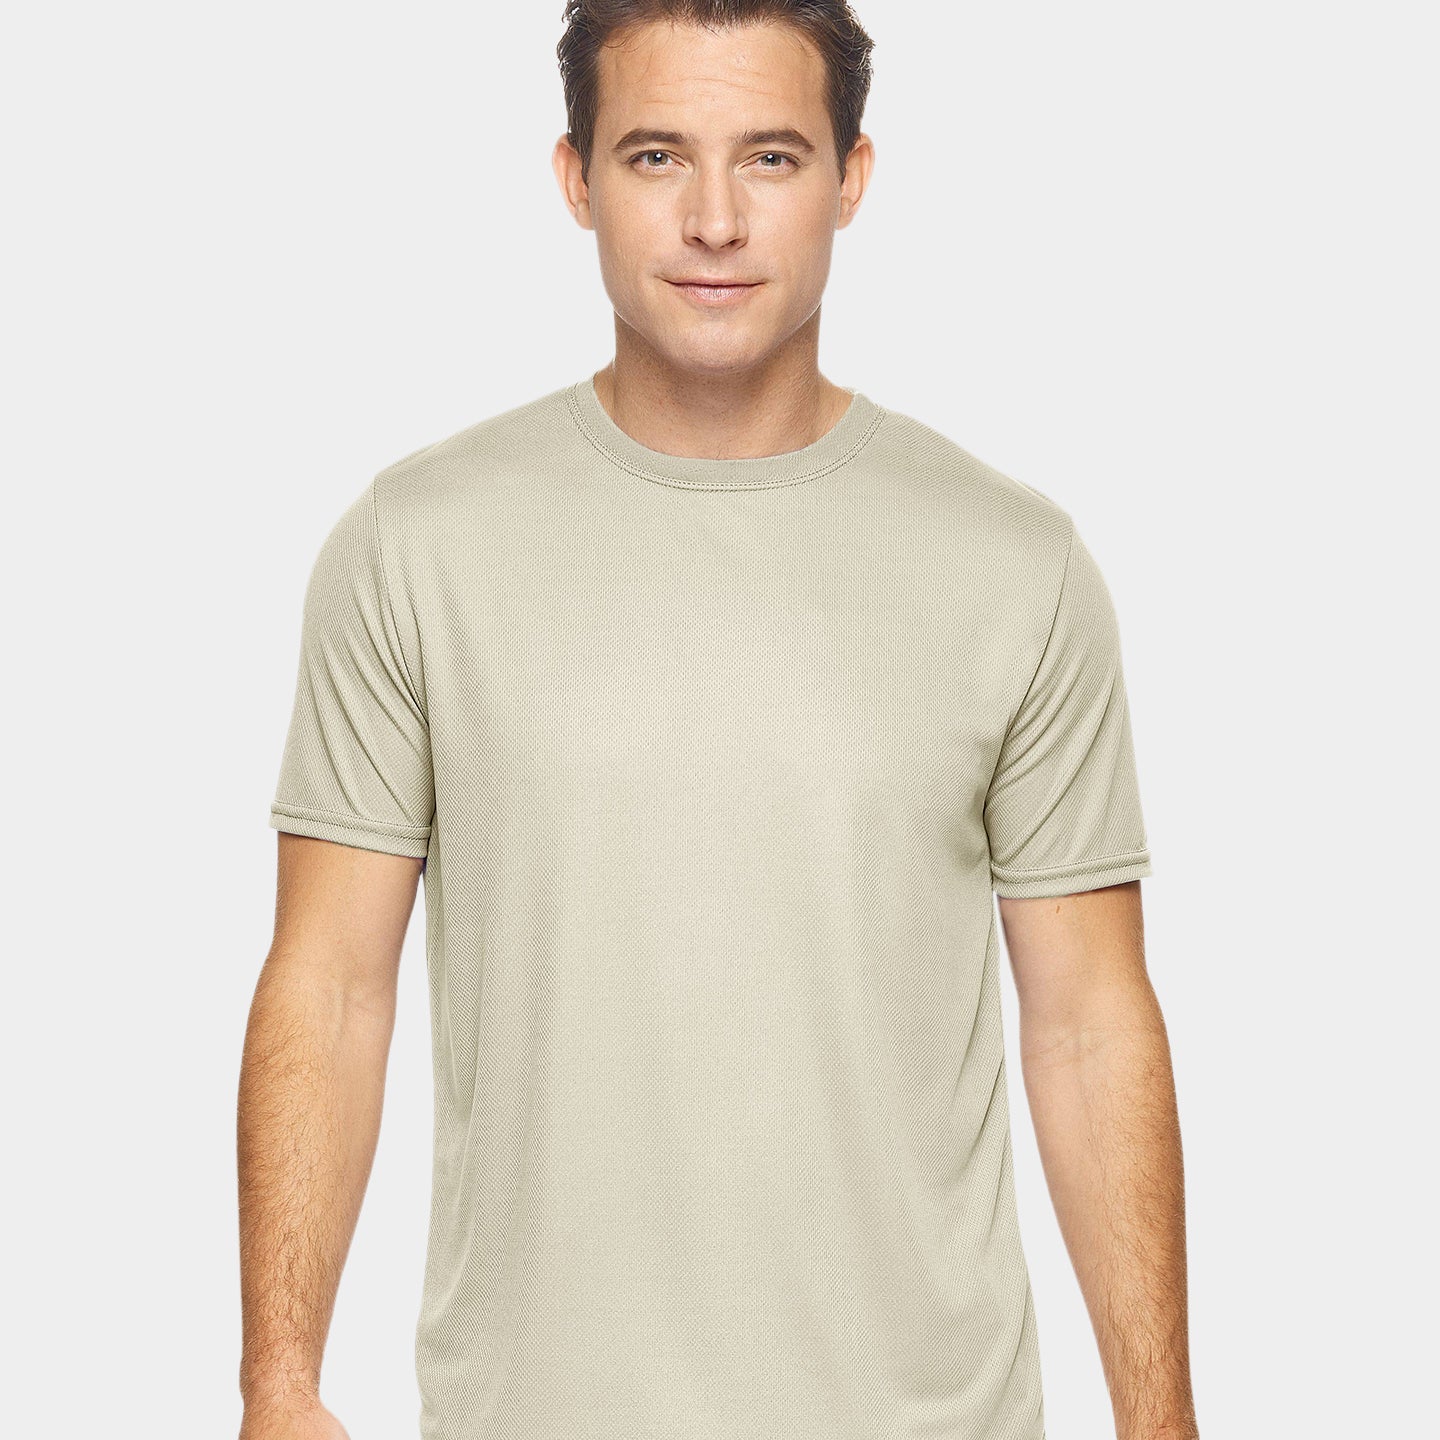 Expert Brand Oxymesh Men's Crewneck Performance T-Shirt, 4XL, Sand A1